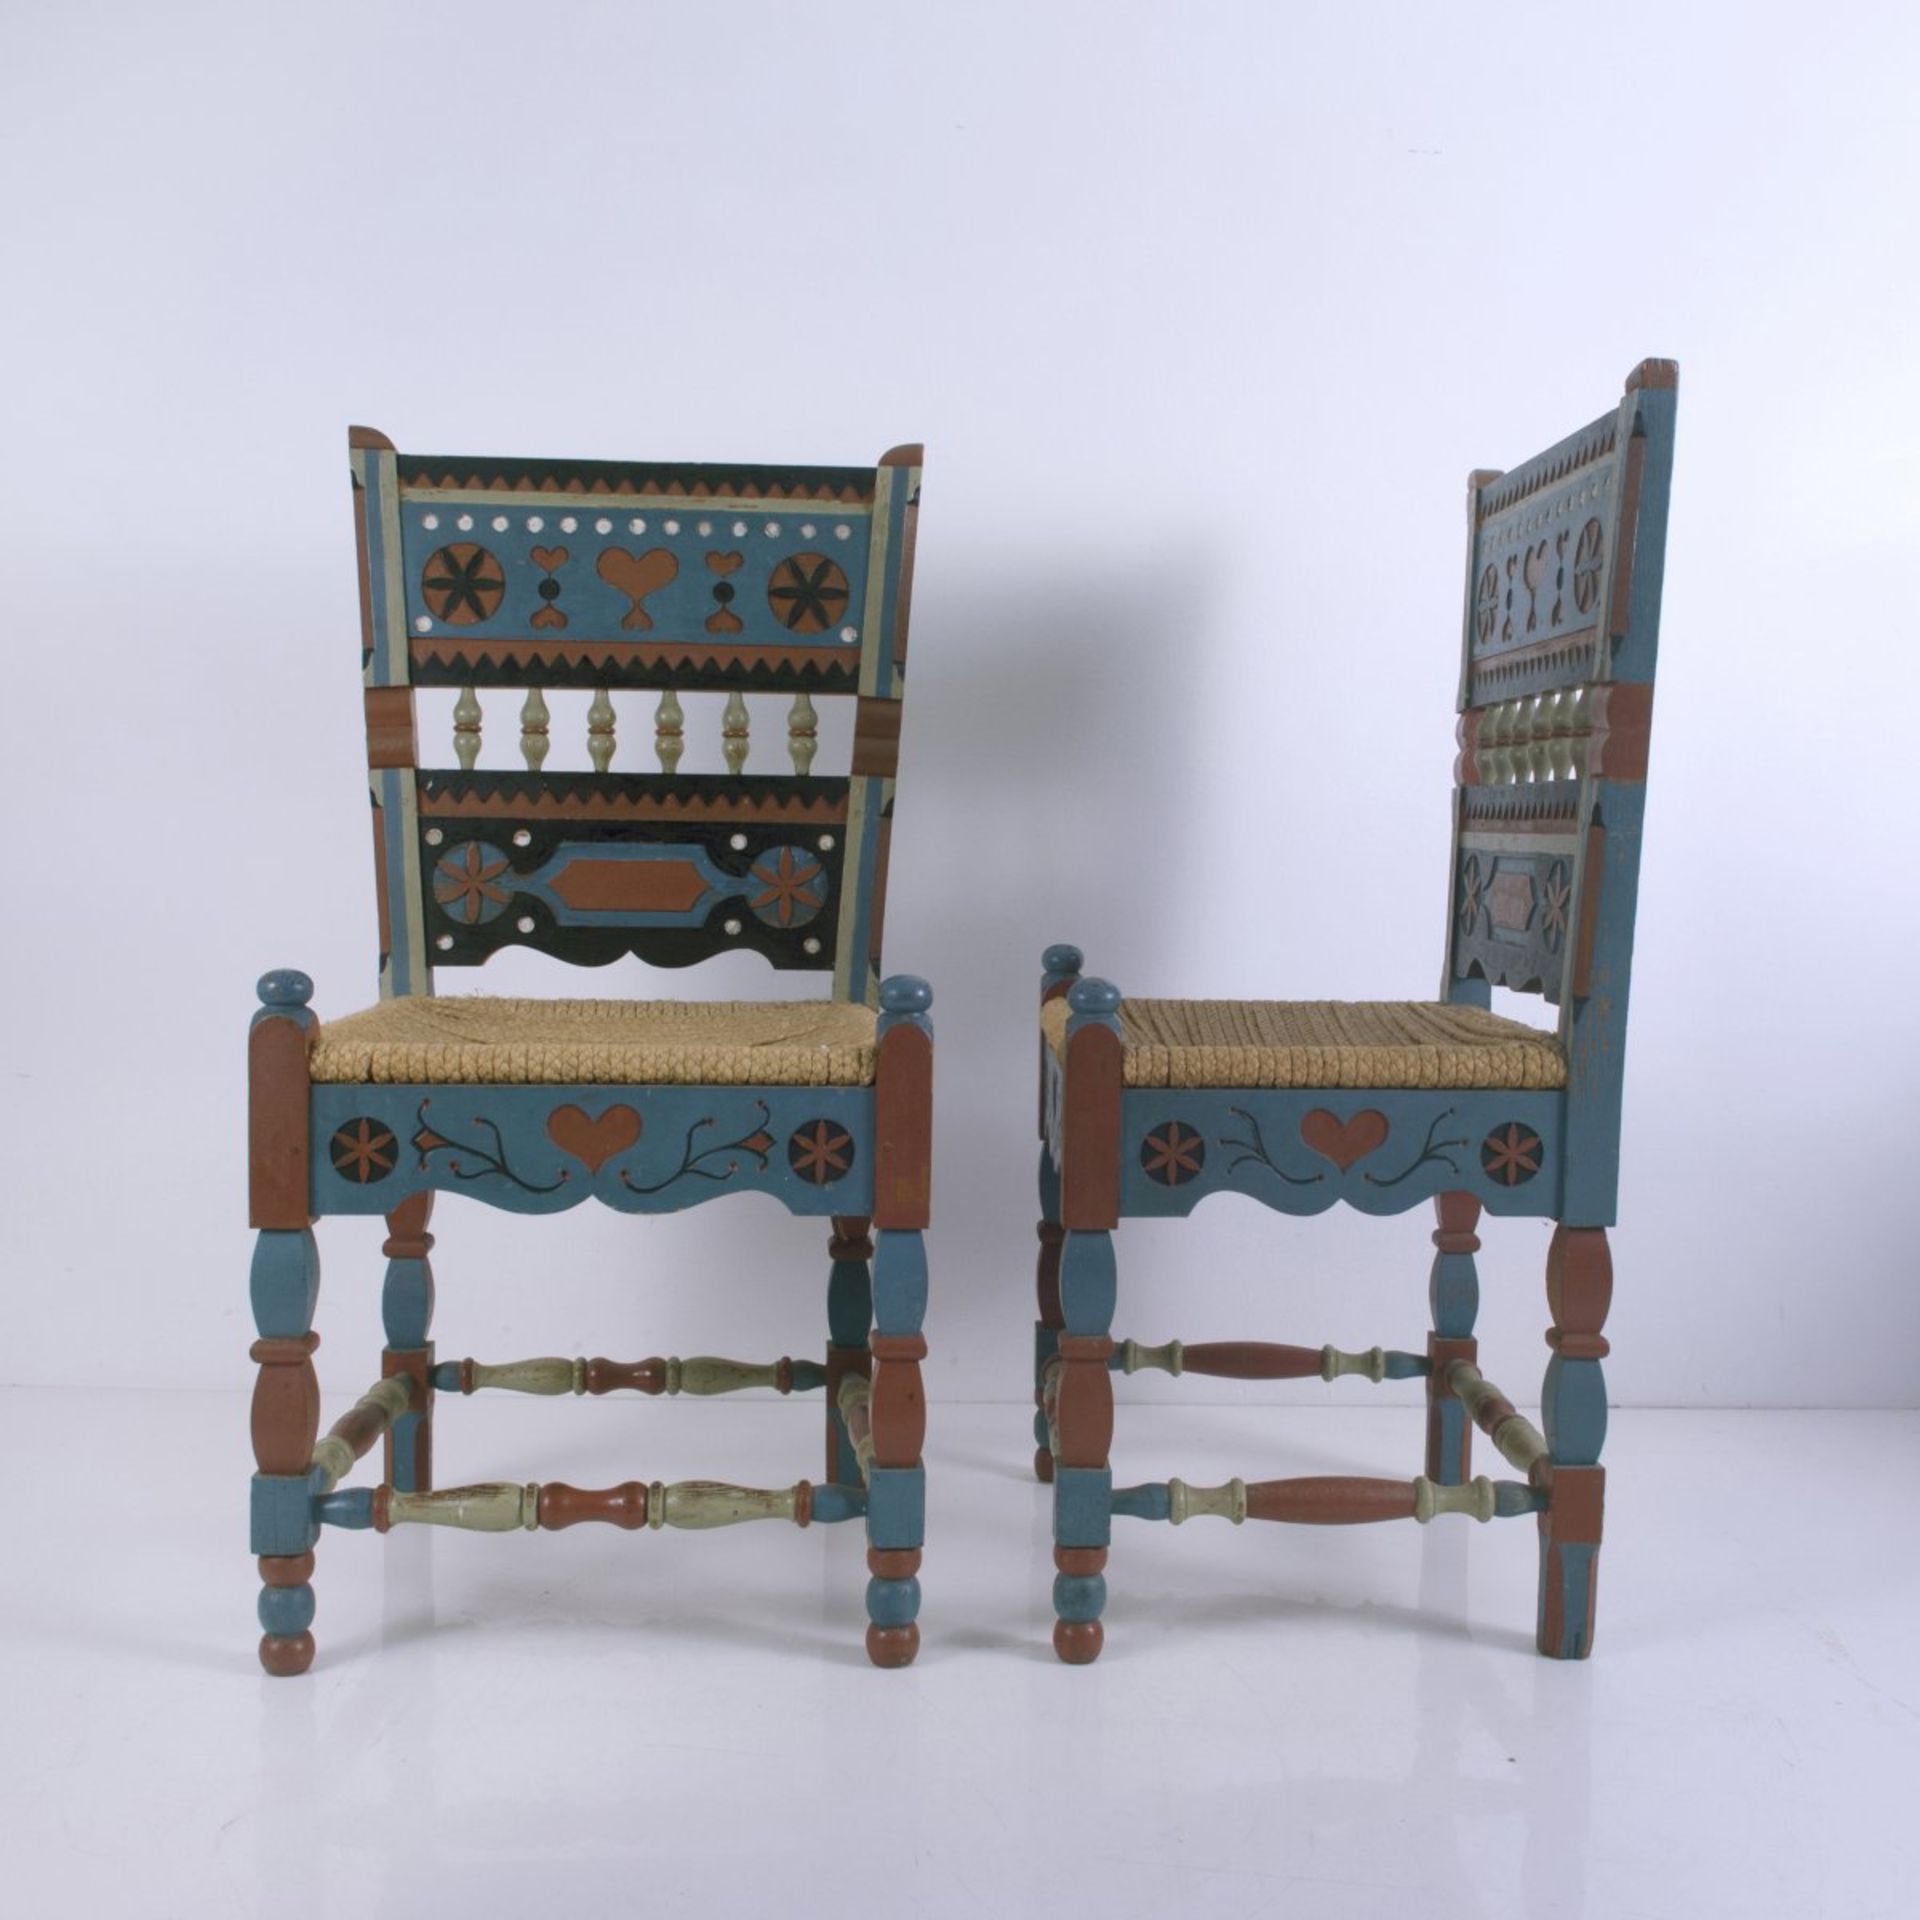 Carl Larsson (im Stile von), Zwei Sessel, um 1910 - Bild 2 aus 3